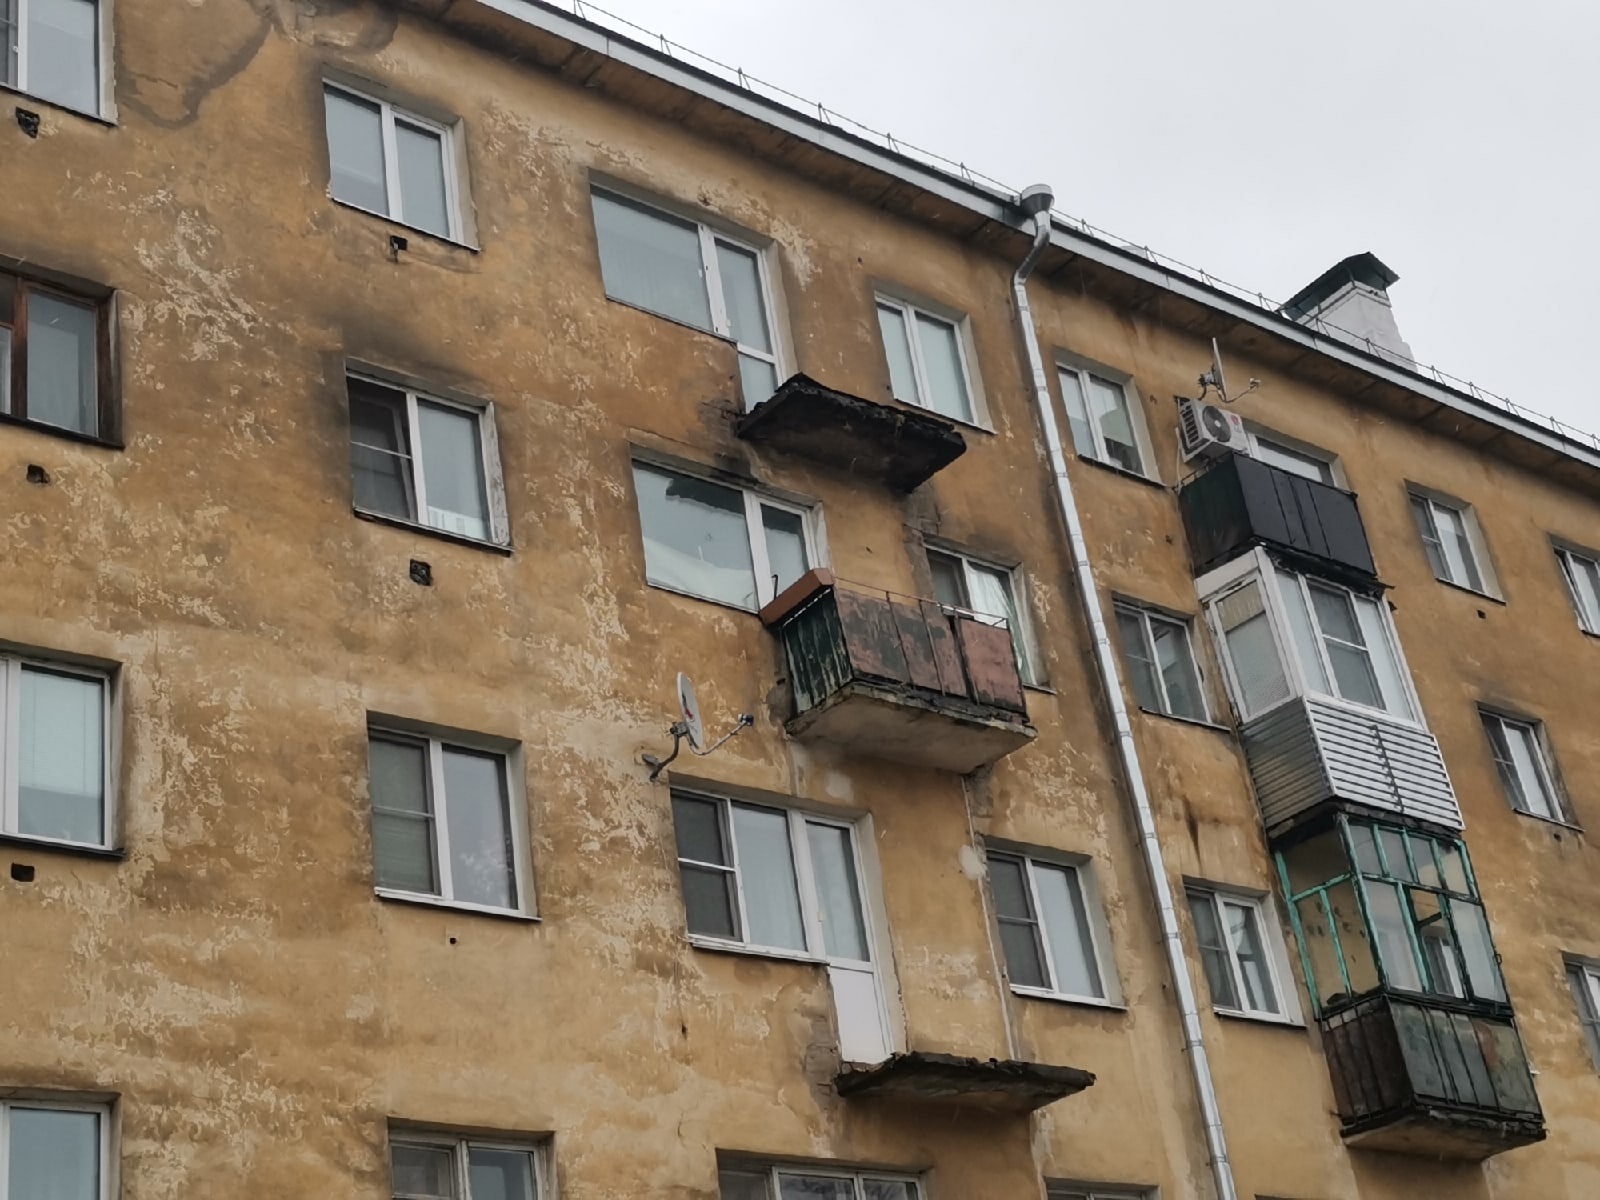  С 1 июля застекленные балконы под запретом: их заставят снять и не разрешат сделать снова  